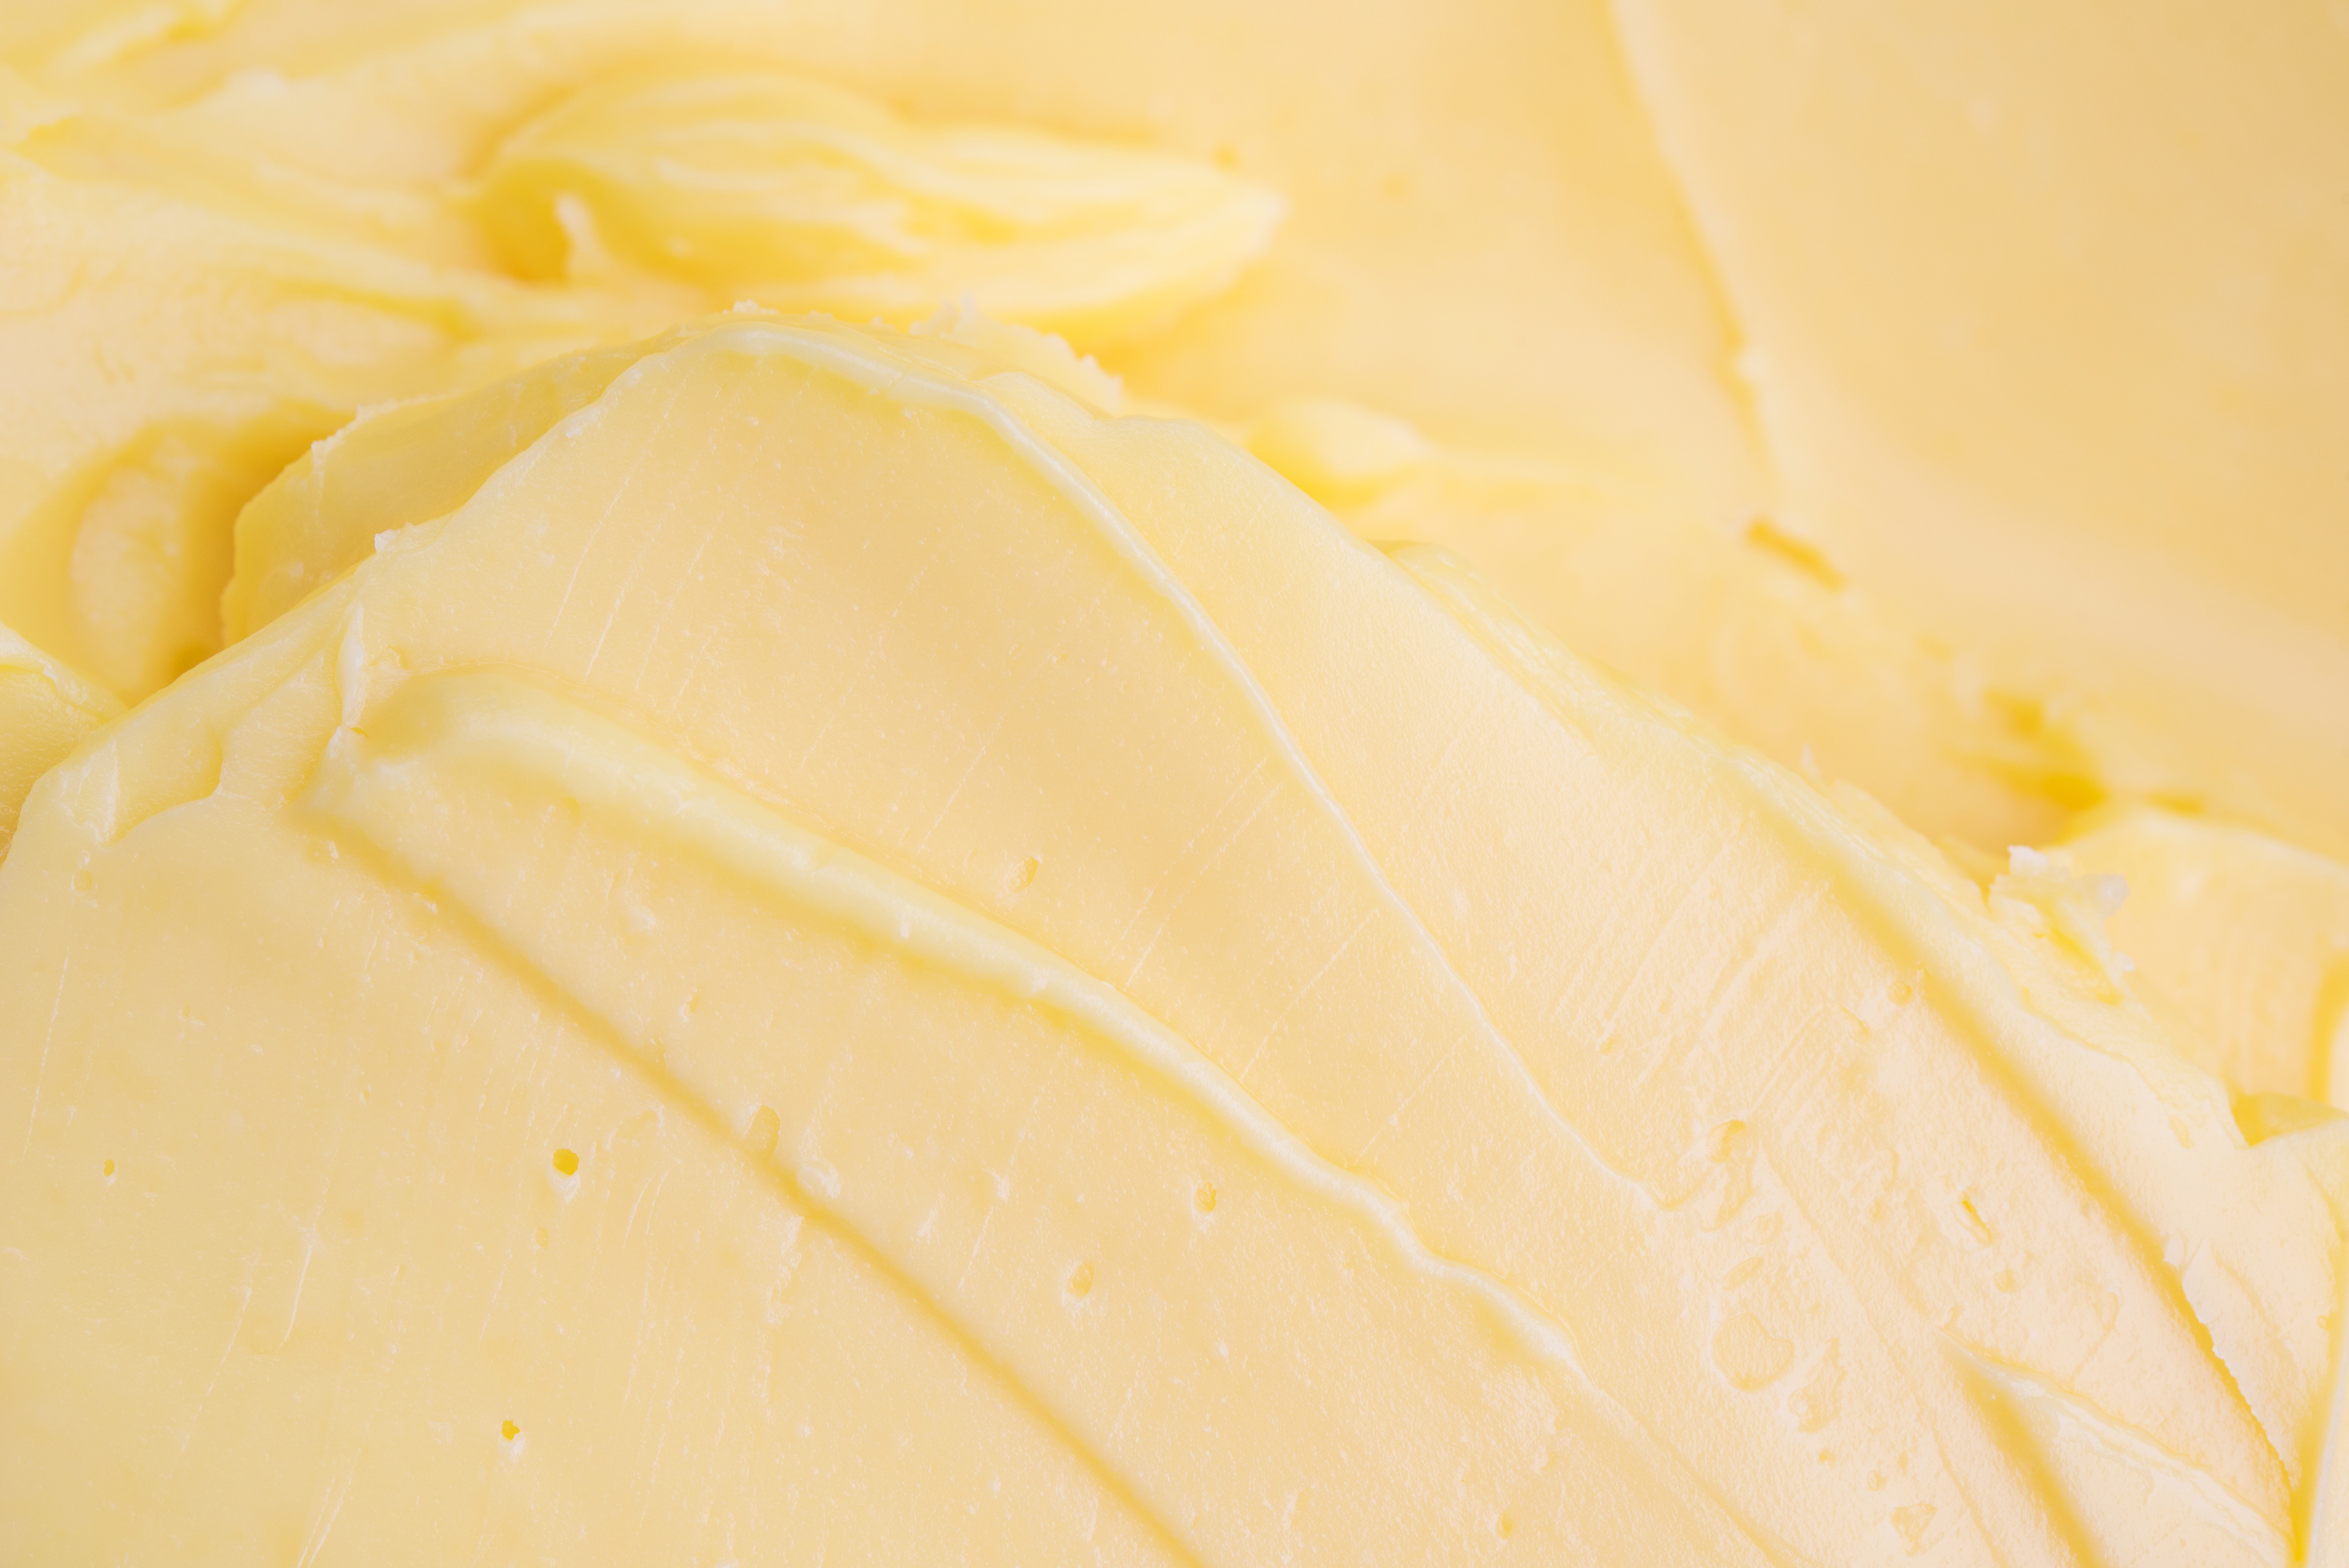 Creamy Butter